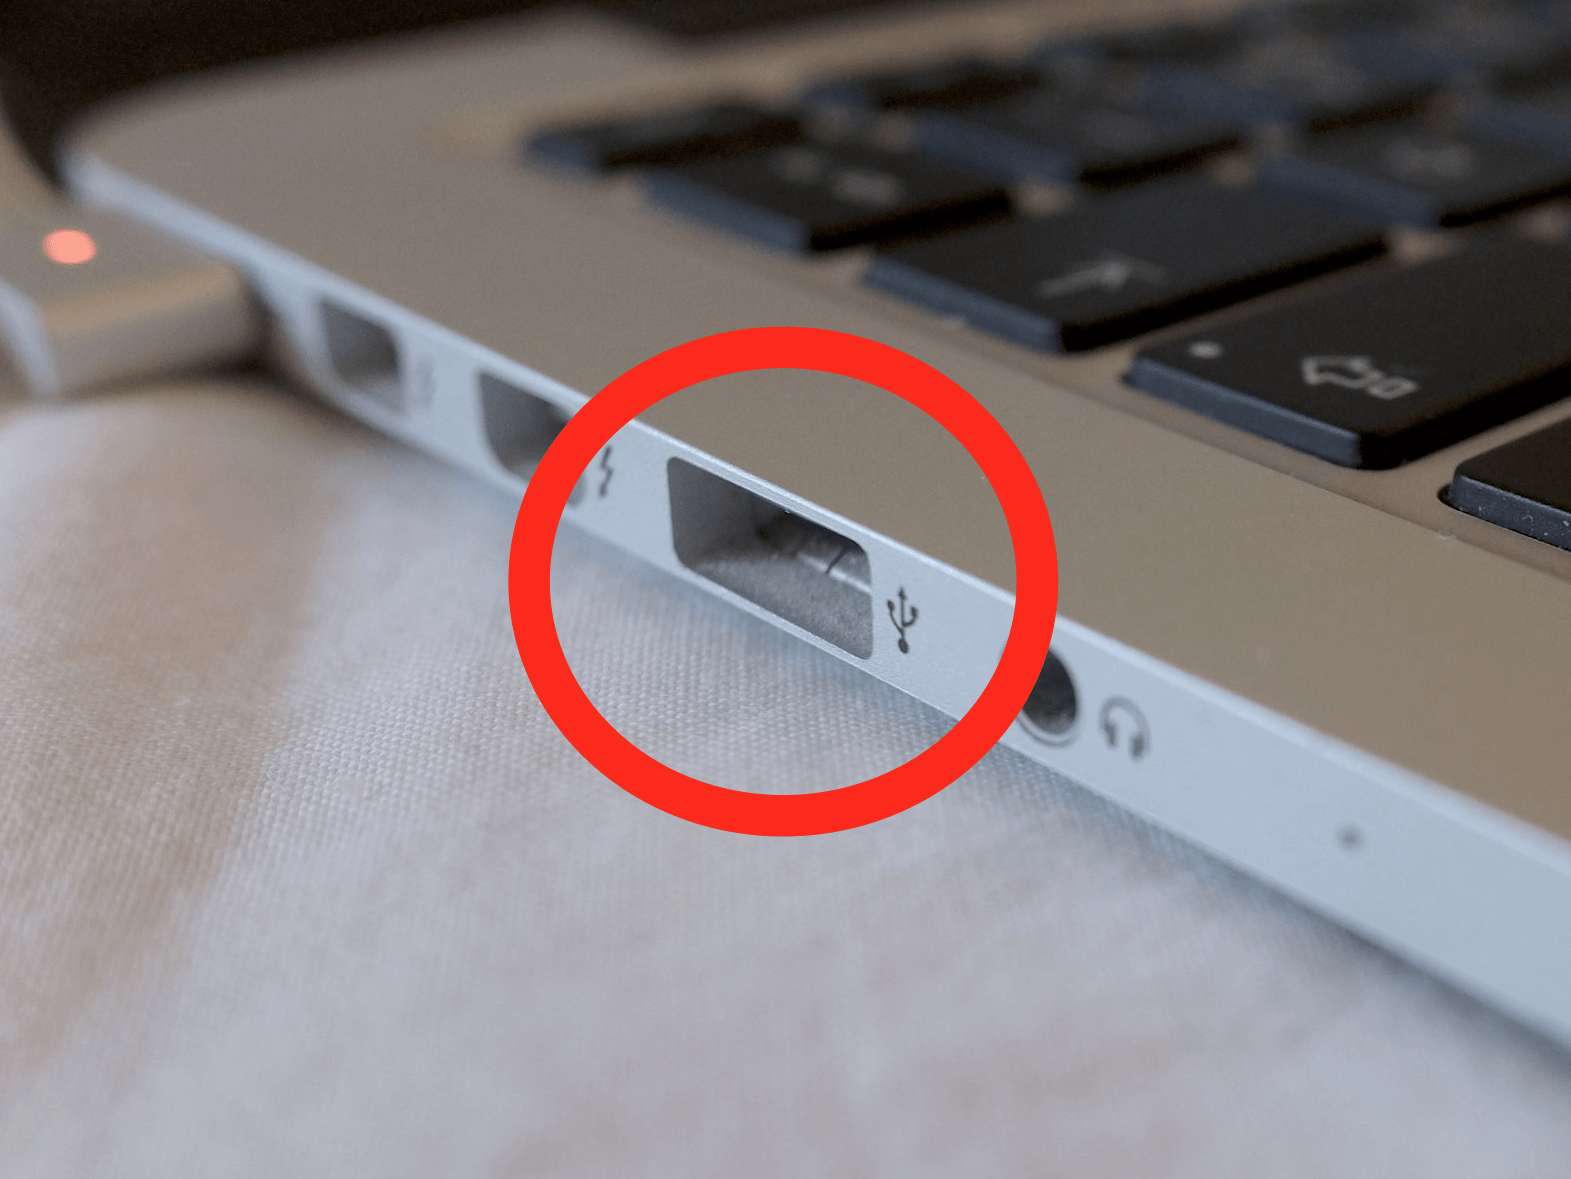 ลือหนัก Apple เตรียมตัดช่องพอร์ต USB ทิ้งใน MacBook Pro ตัวใหม่ด้วย